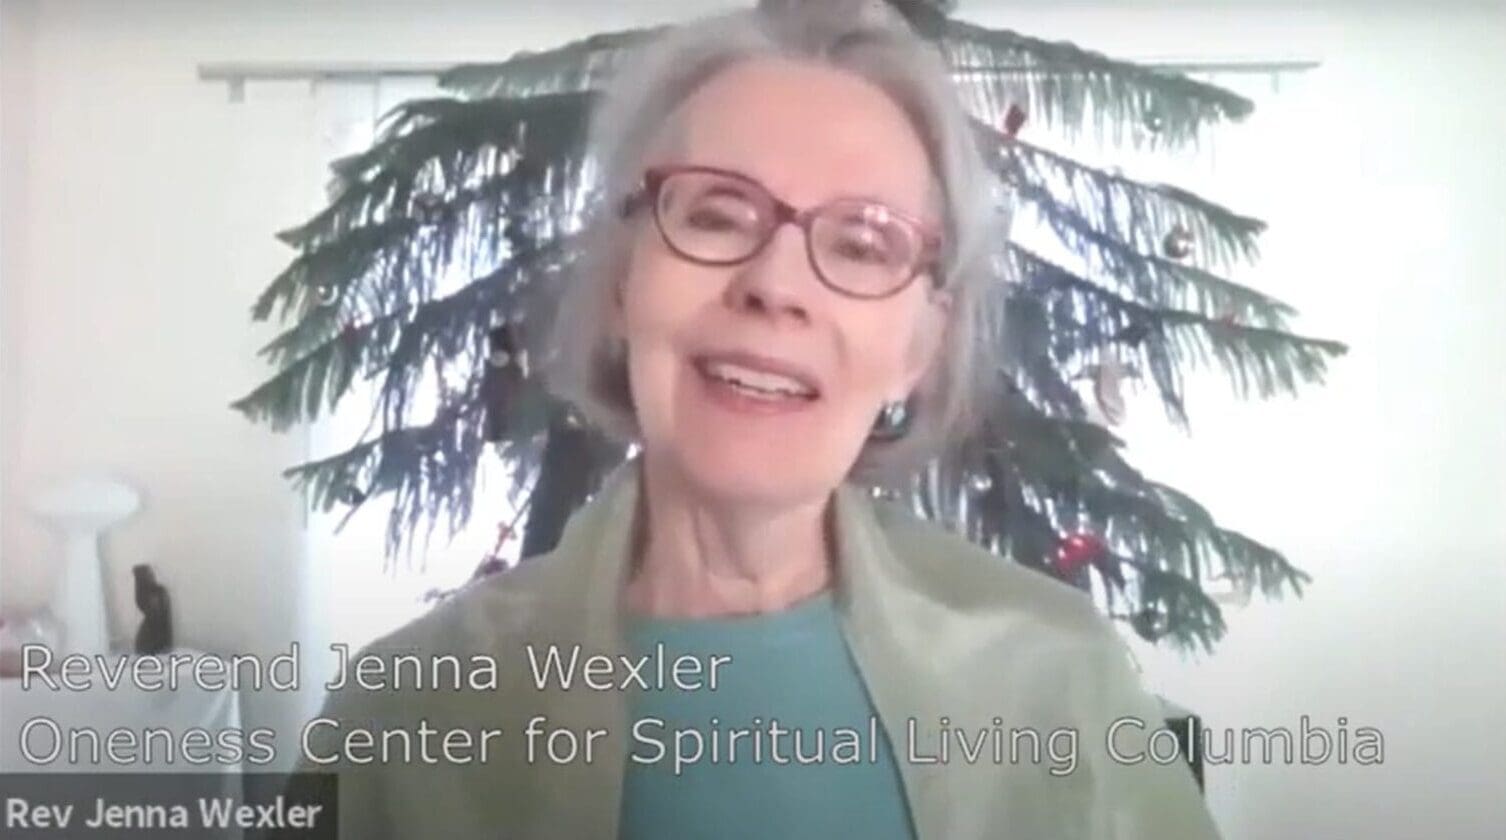 “The Way It Works” – Rev. Jenna Wexler